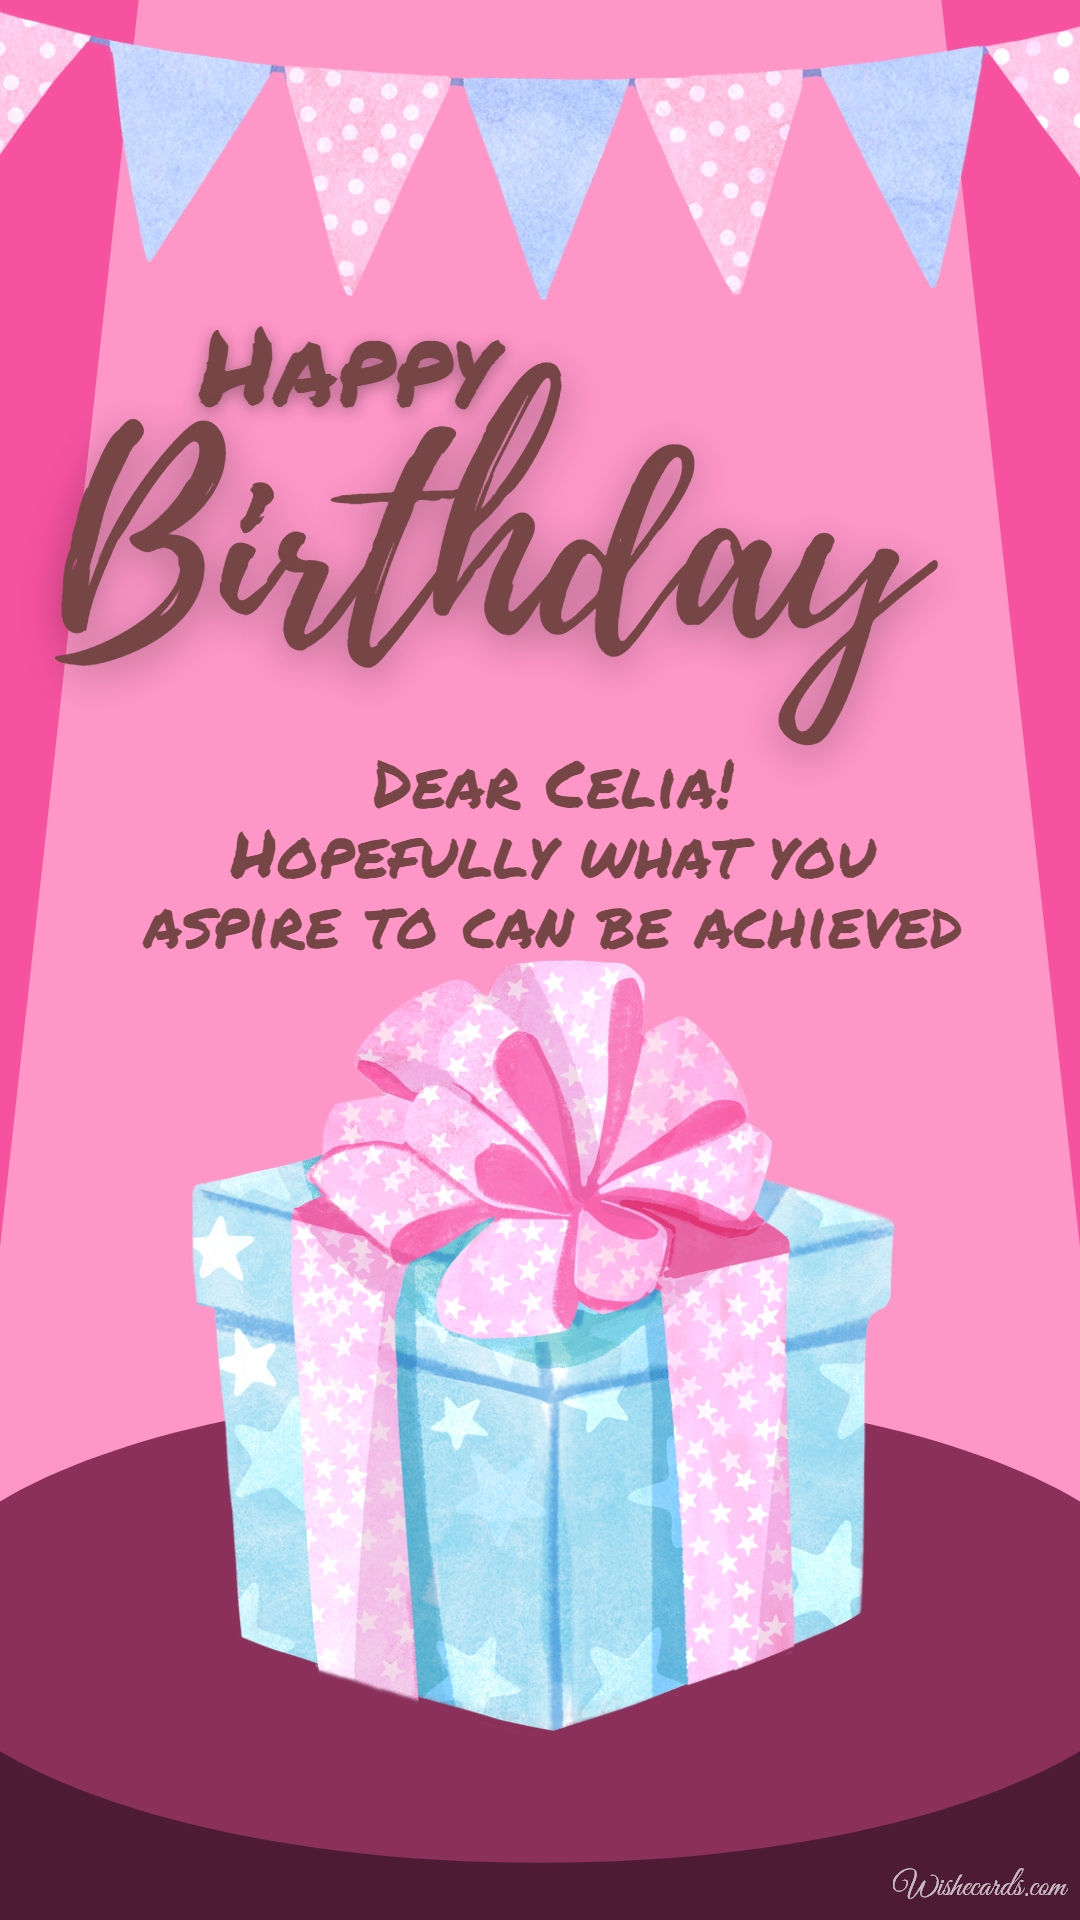 Happy Birthday Celia Image